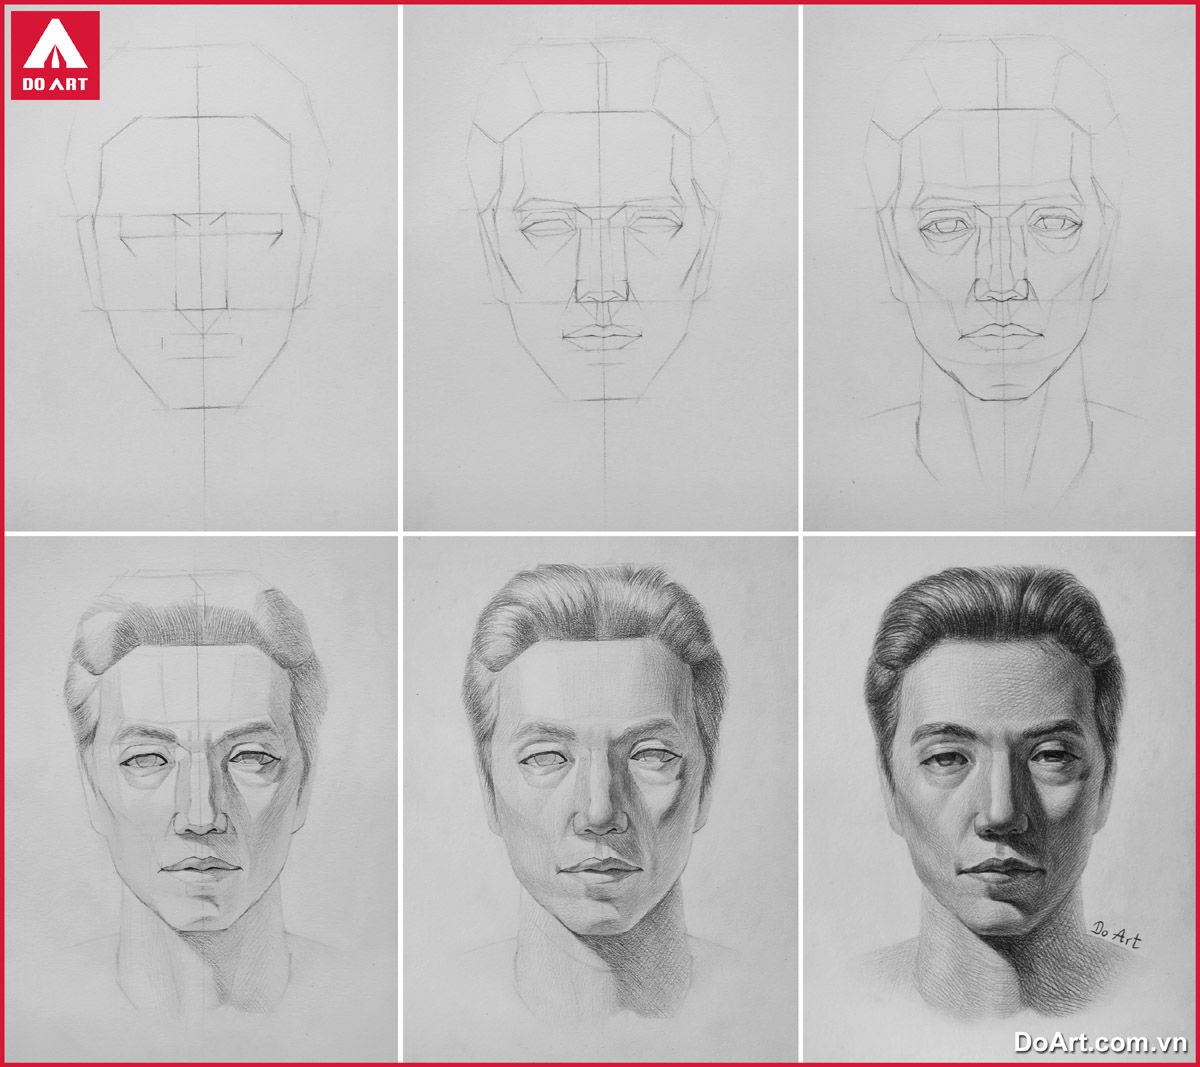 Cách vẽ tranh chân dung cơ bản bằng bút chì đơn giản nhất quy trình vẽ  chân dung người thật